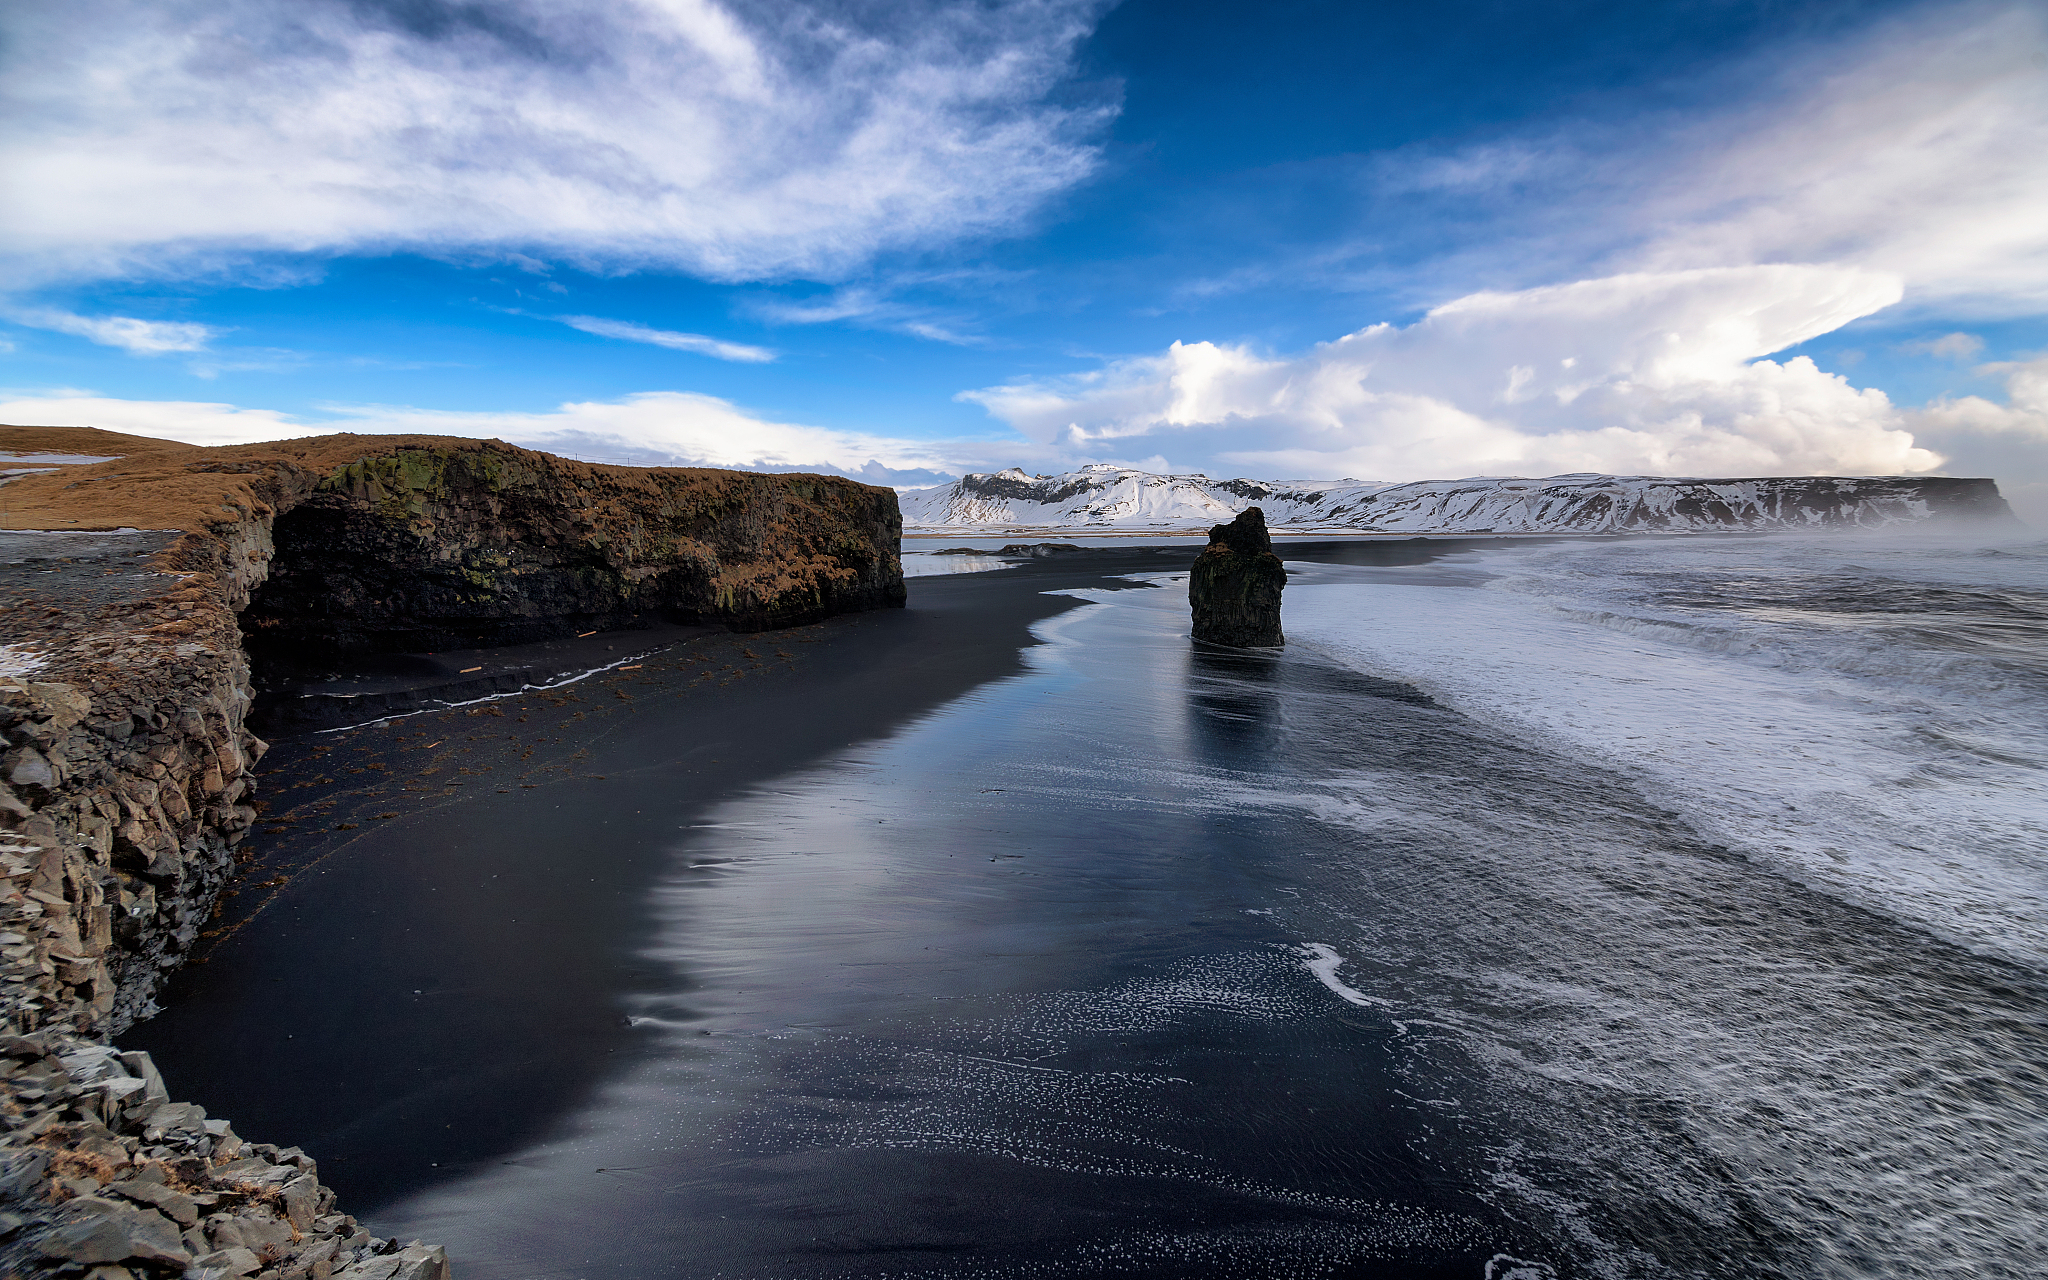 维克黑沙滩(reynisfjara )位于冰岛维克小镇附近,冰岛有许多活火山,黑